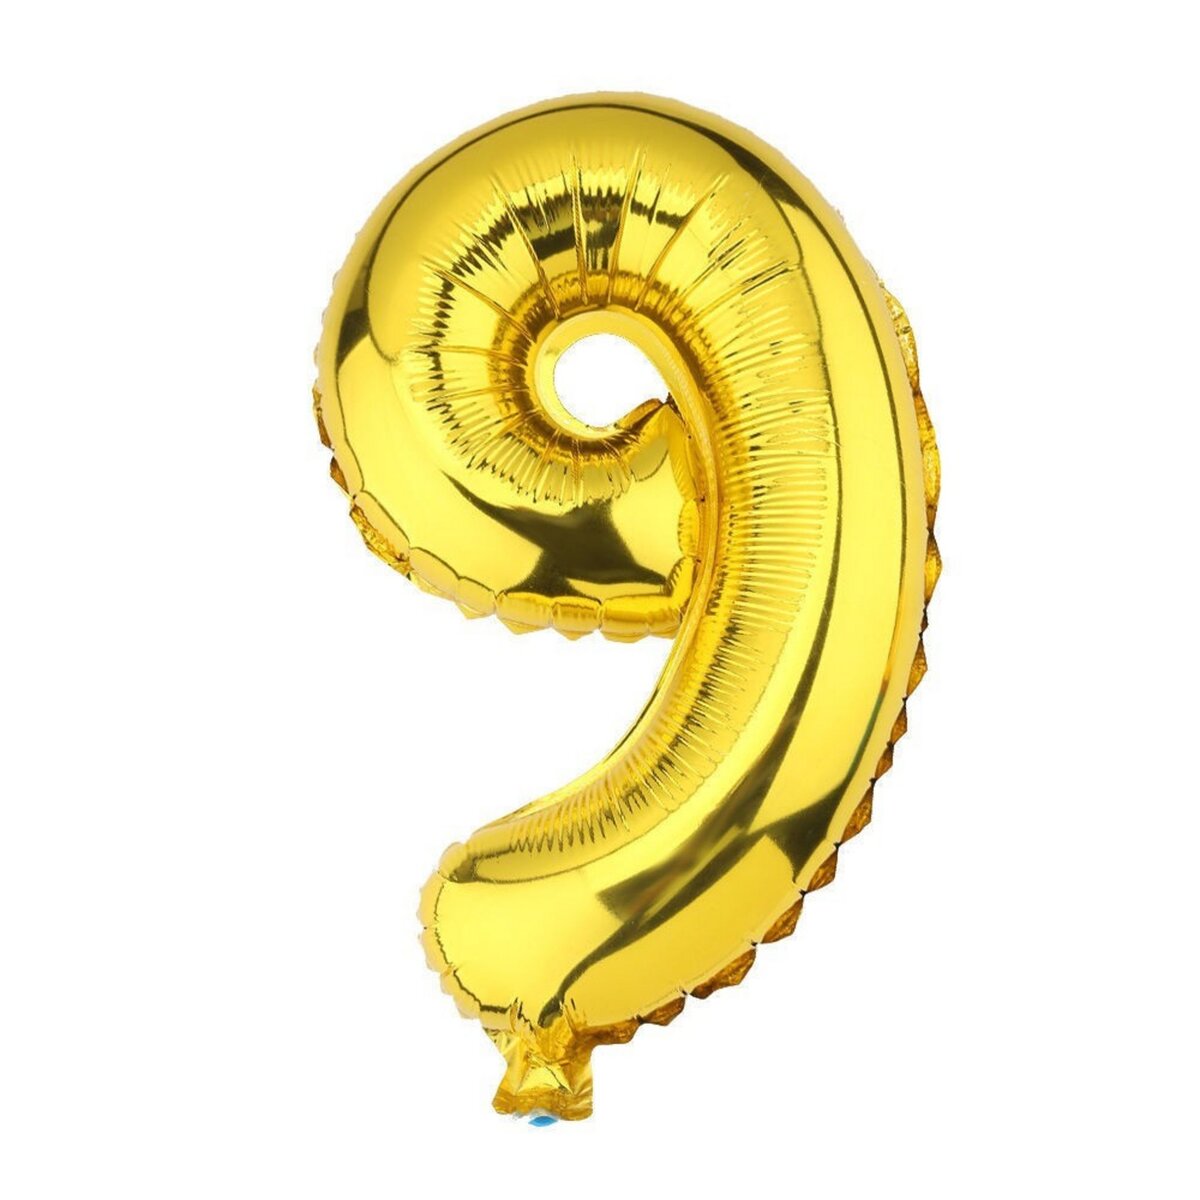  Ballon helium XXL 80 cm chiffre 9 dore or jaune numero anniversaire